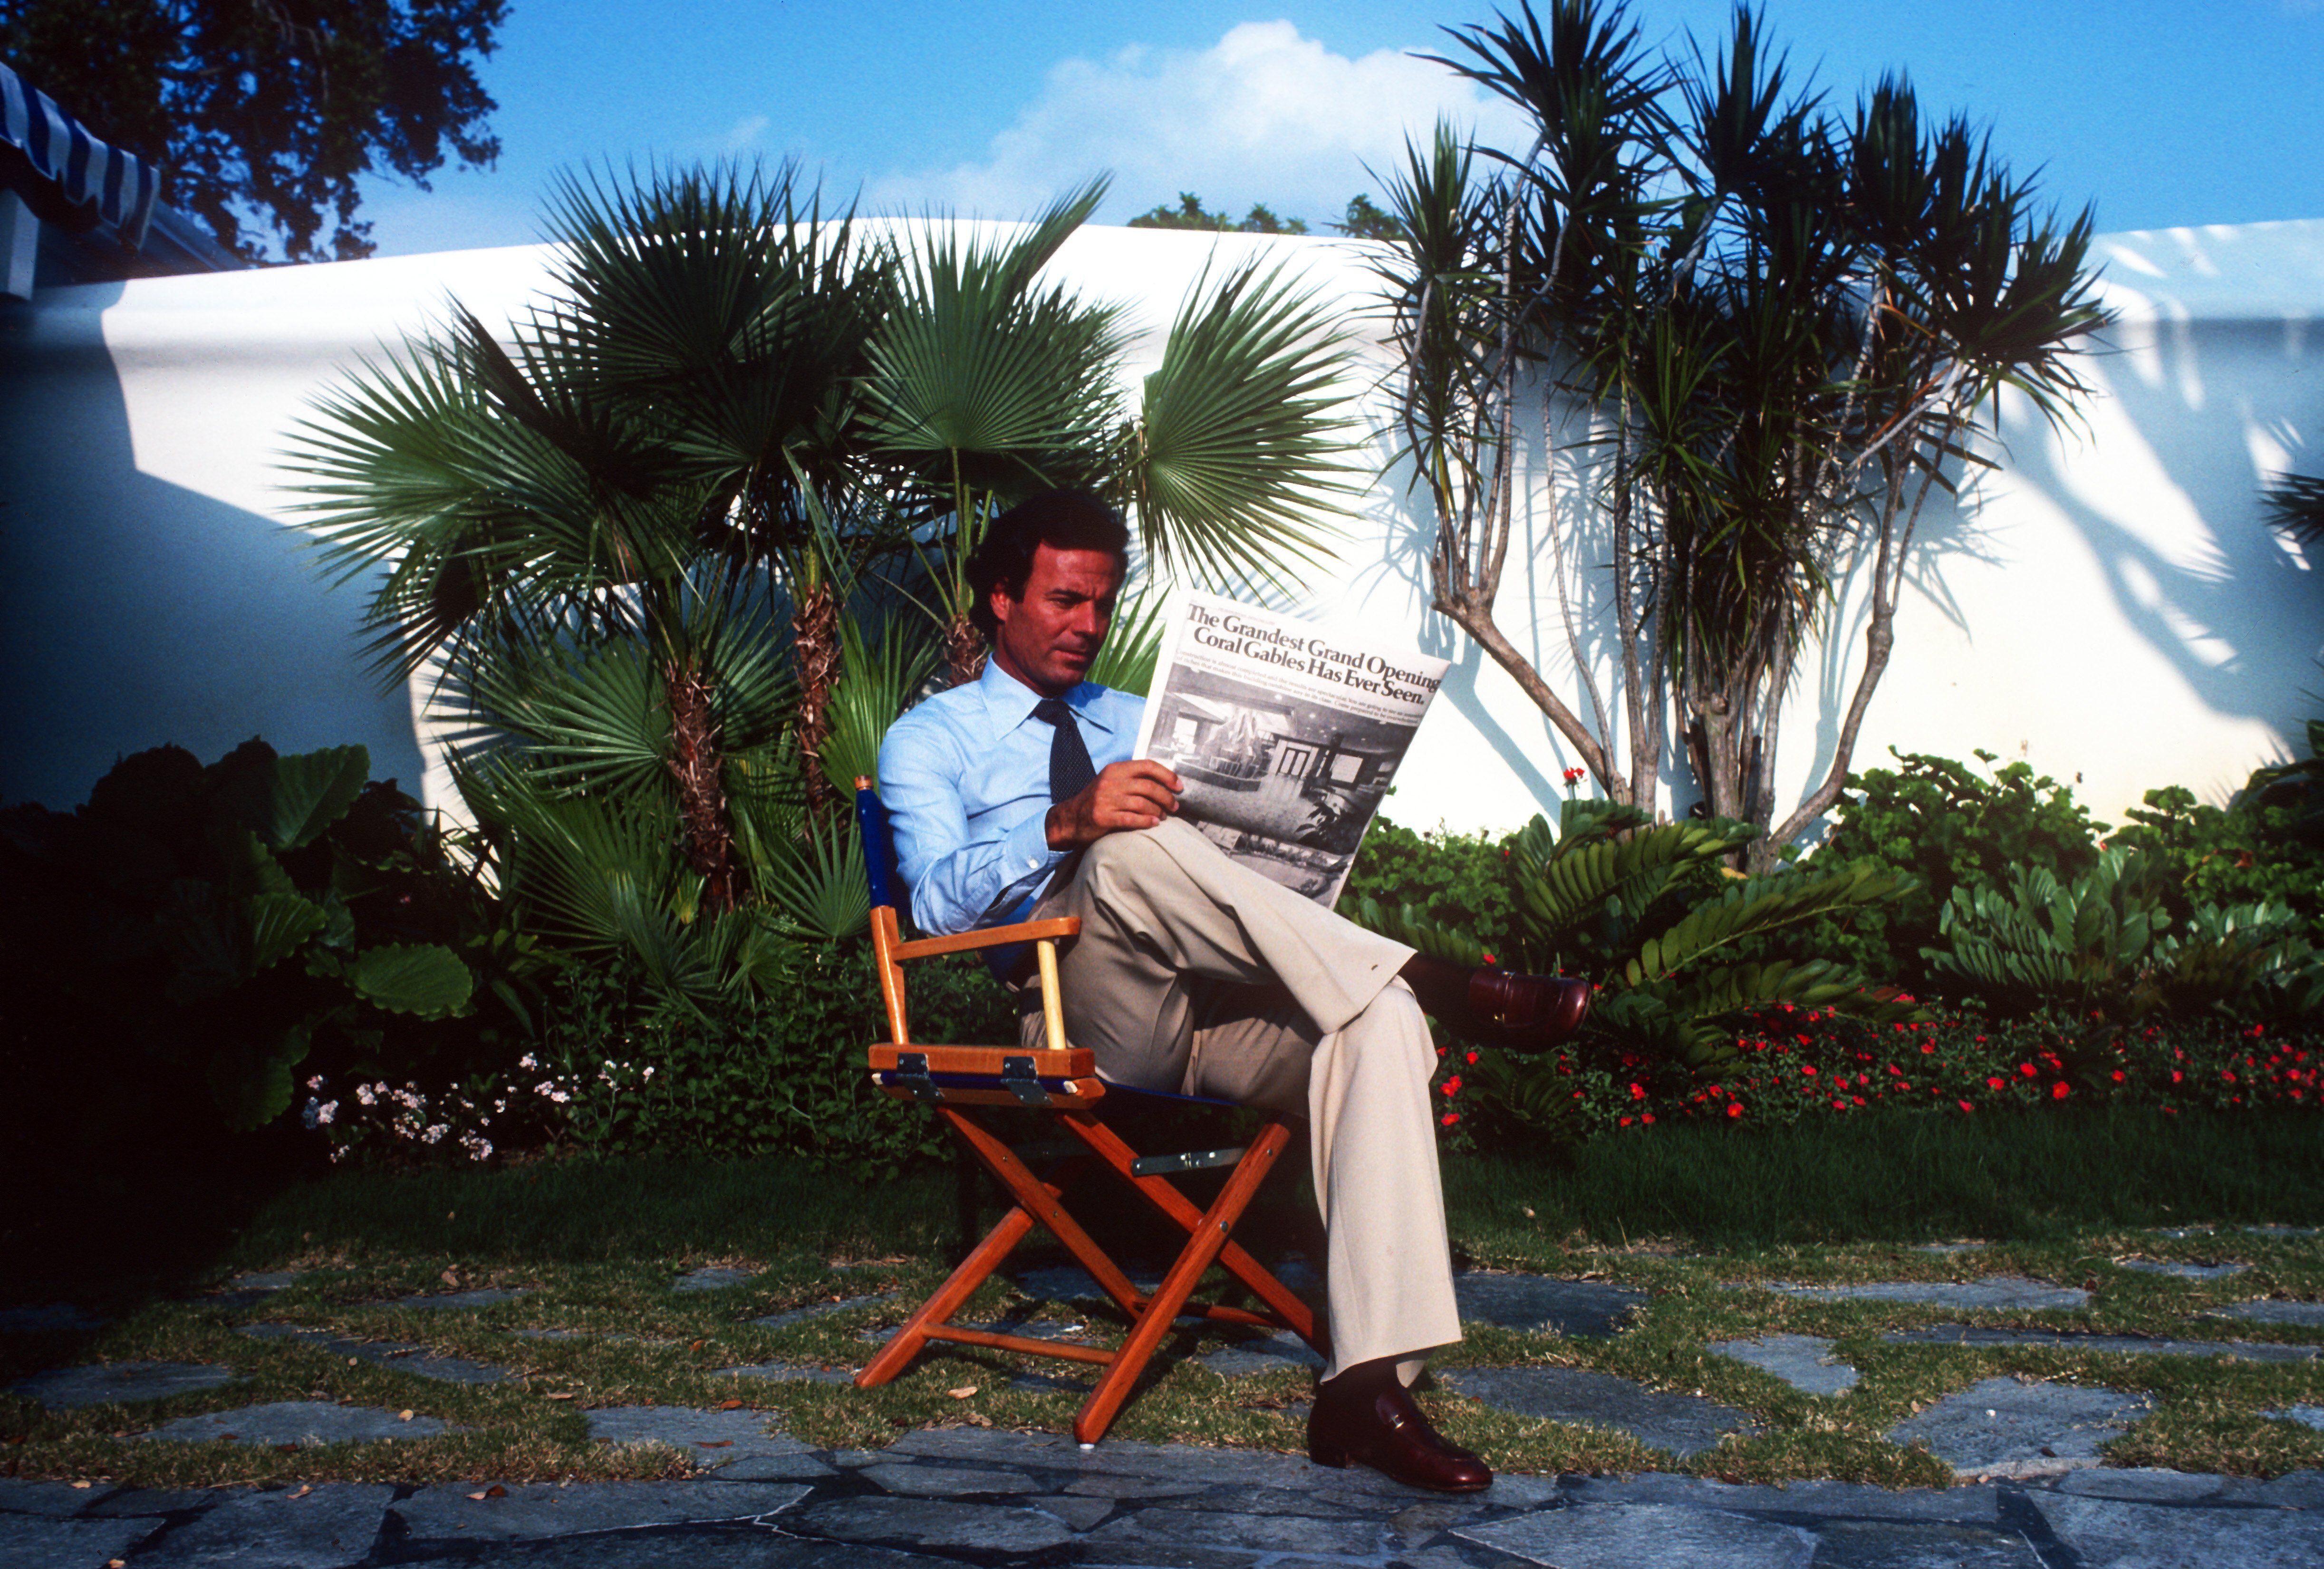 Julio Iglesias en junio de 1980 en Miami, Florida.